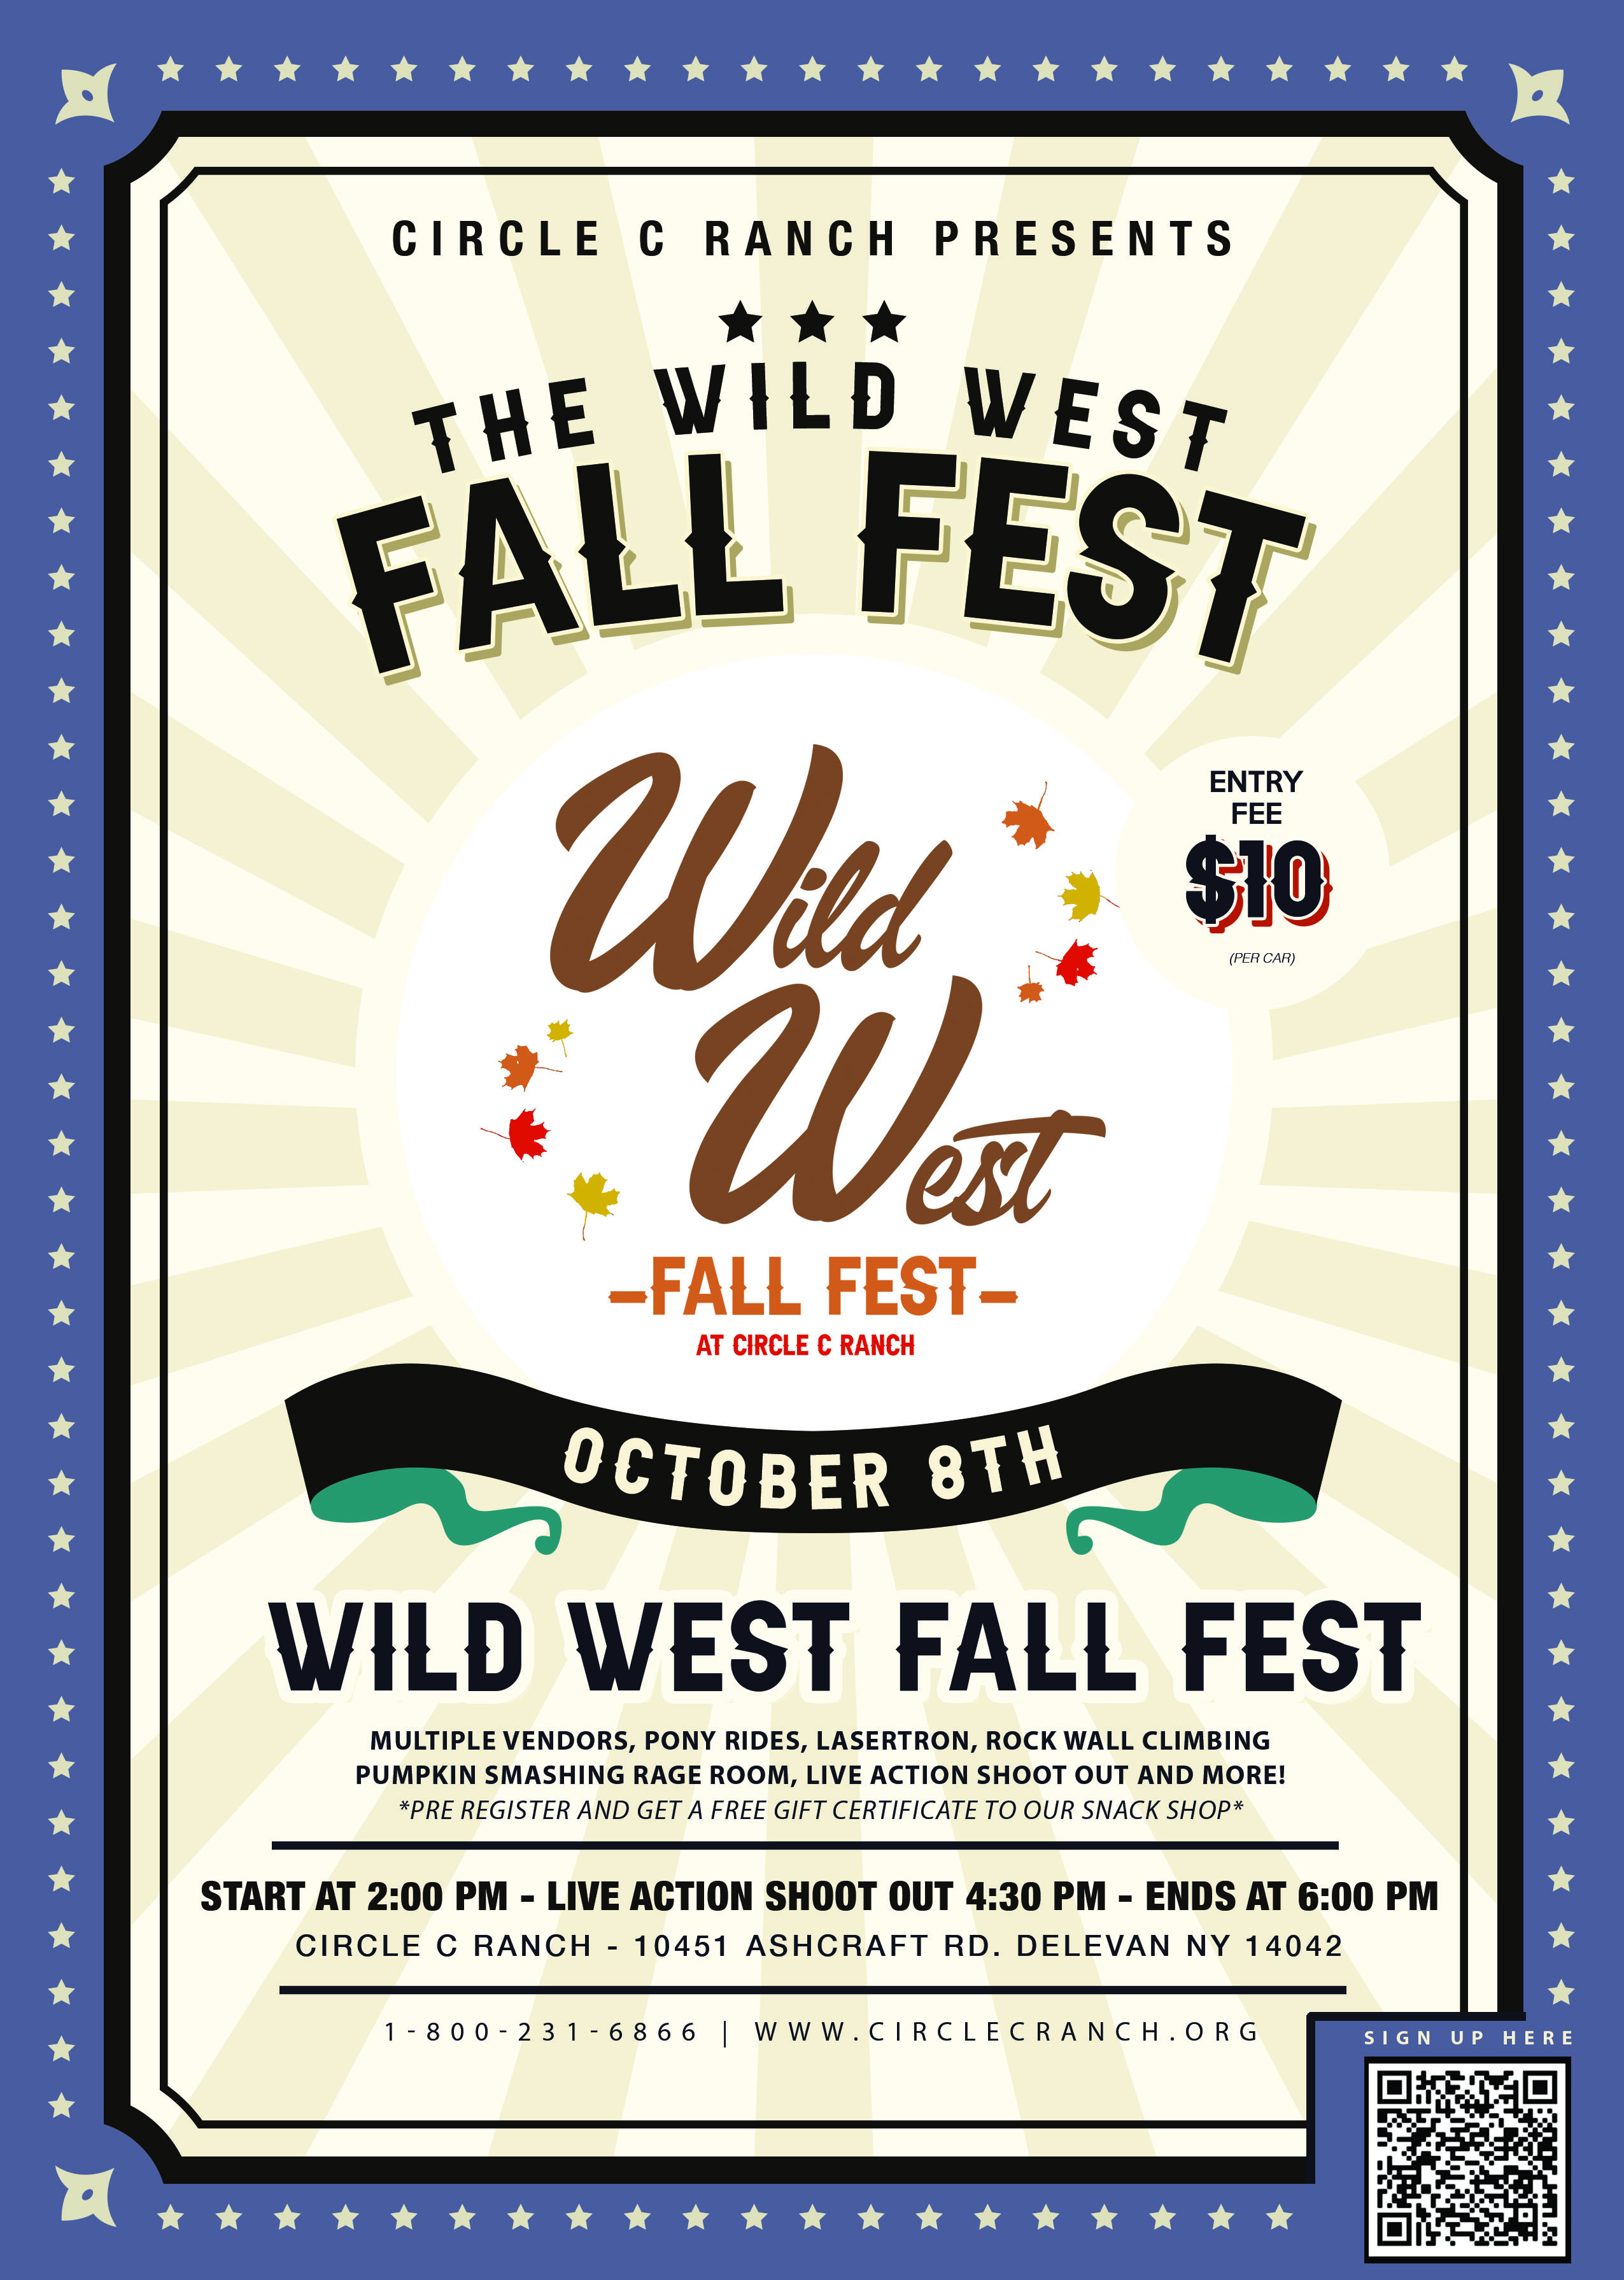 Flyers for Wild West Fall Fest 22Artboard 2